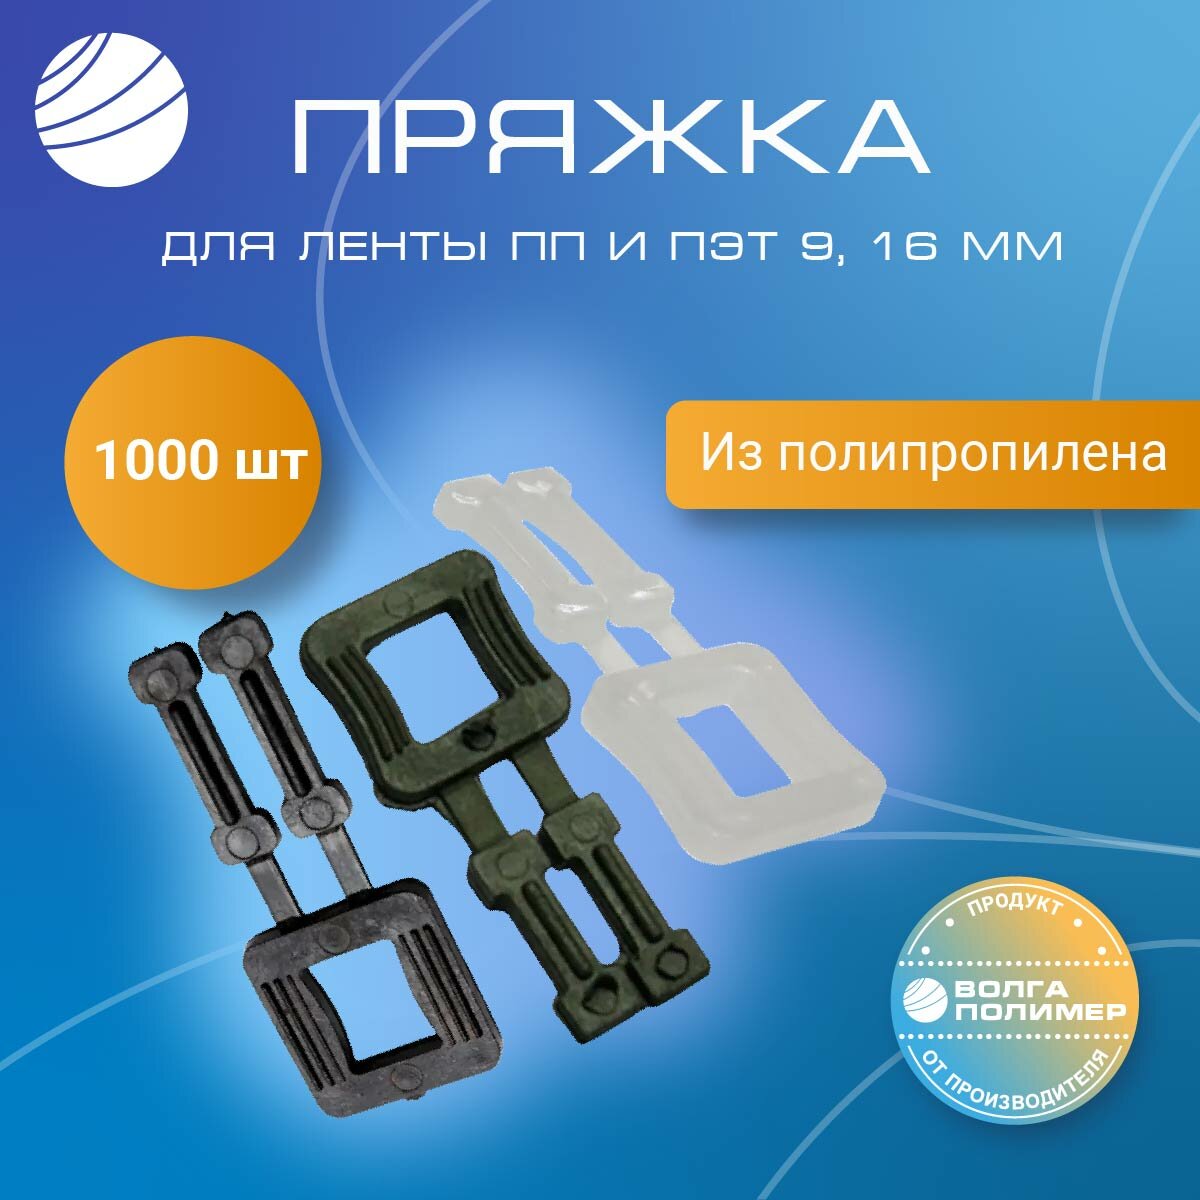 Пряжка полипропиленовая для упаковочной стреппинг ленты, 1000 штук, Волга Полимер